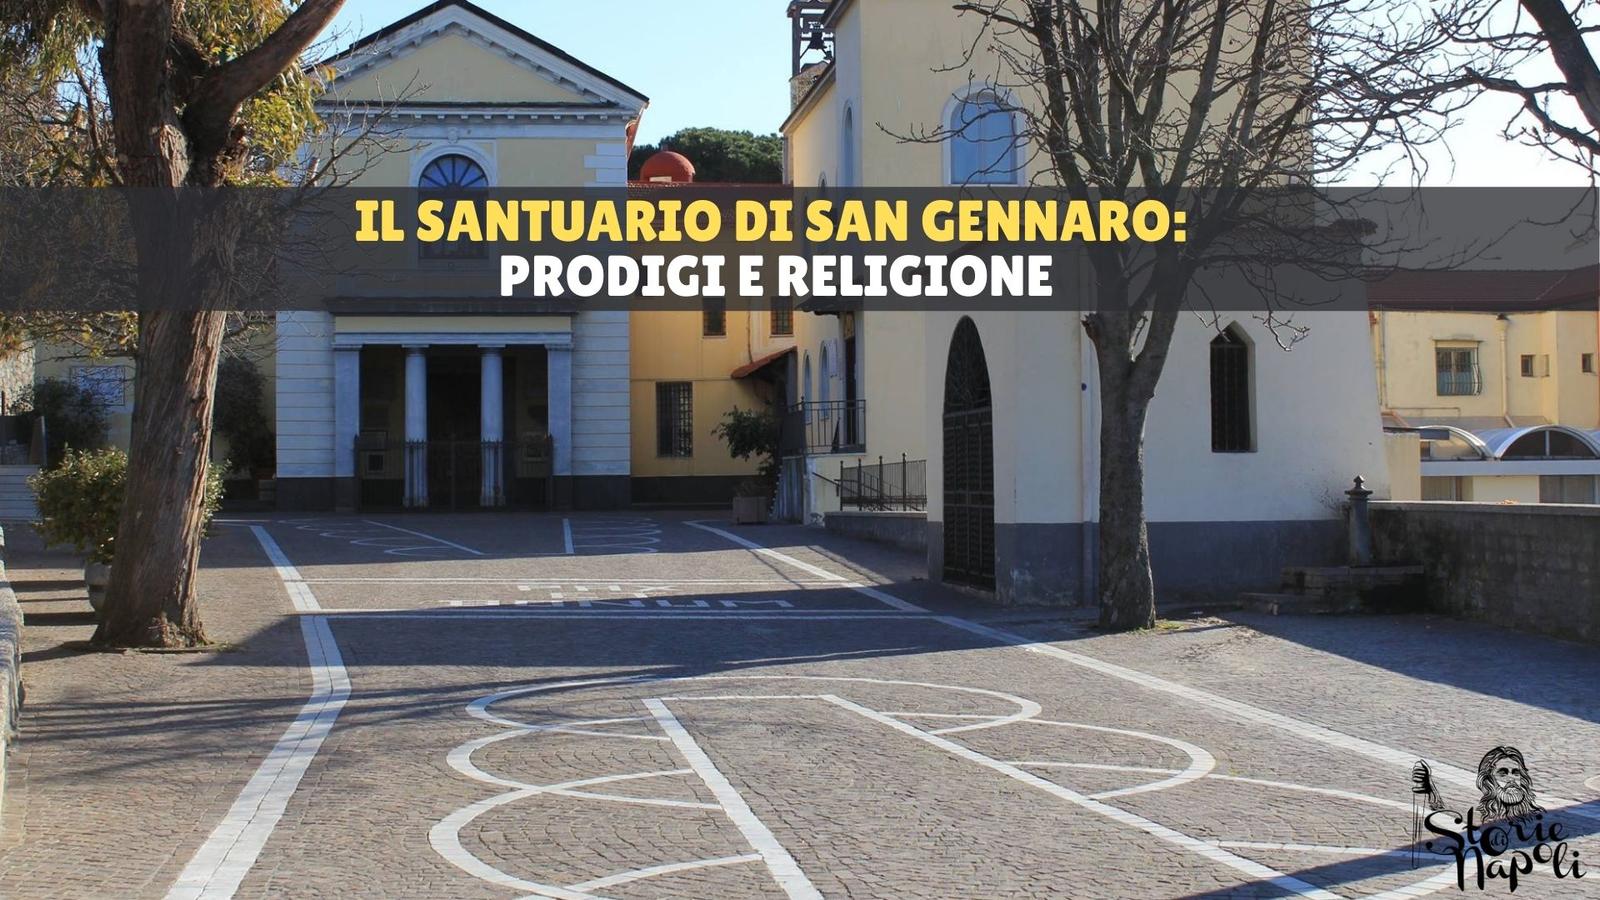 IL SANTUARIO DI SAN GENNARO: PRODIGIO E RELIGIONE